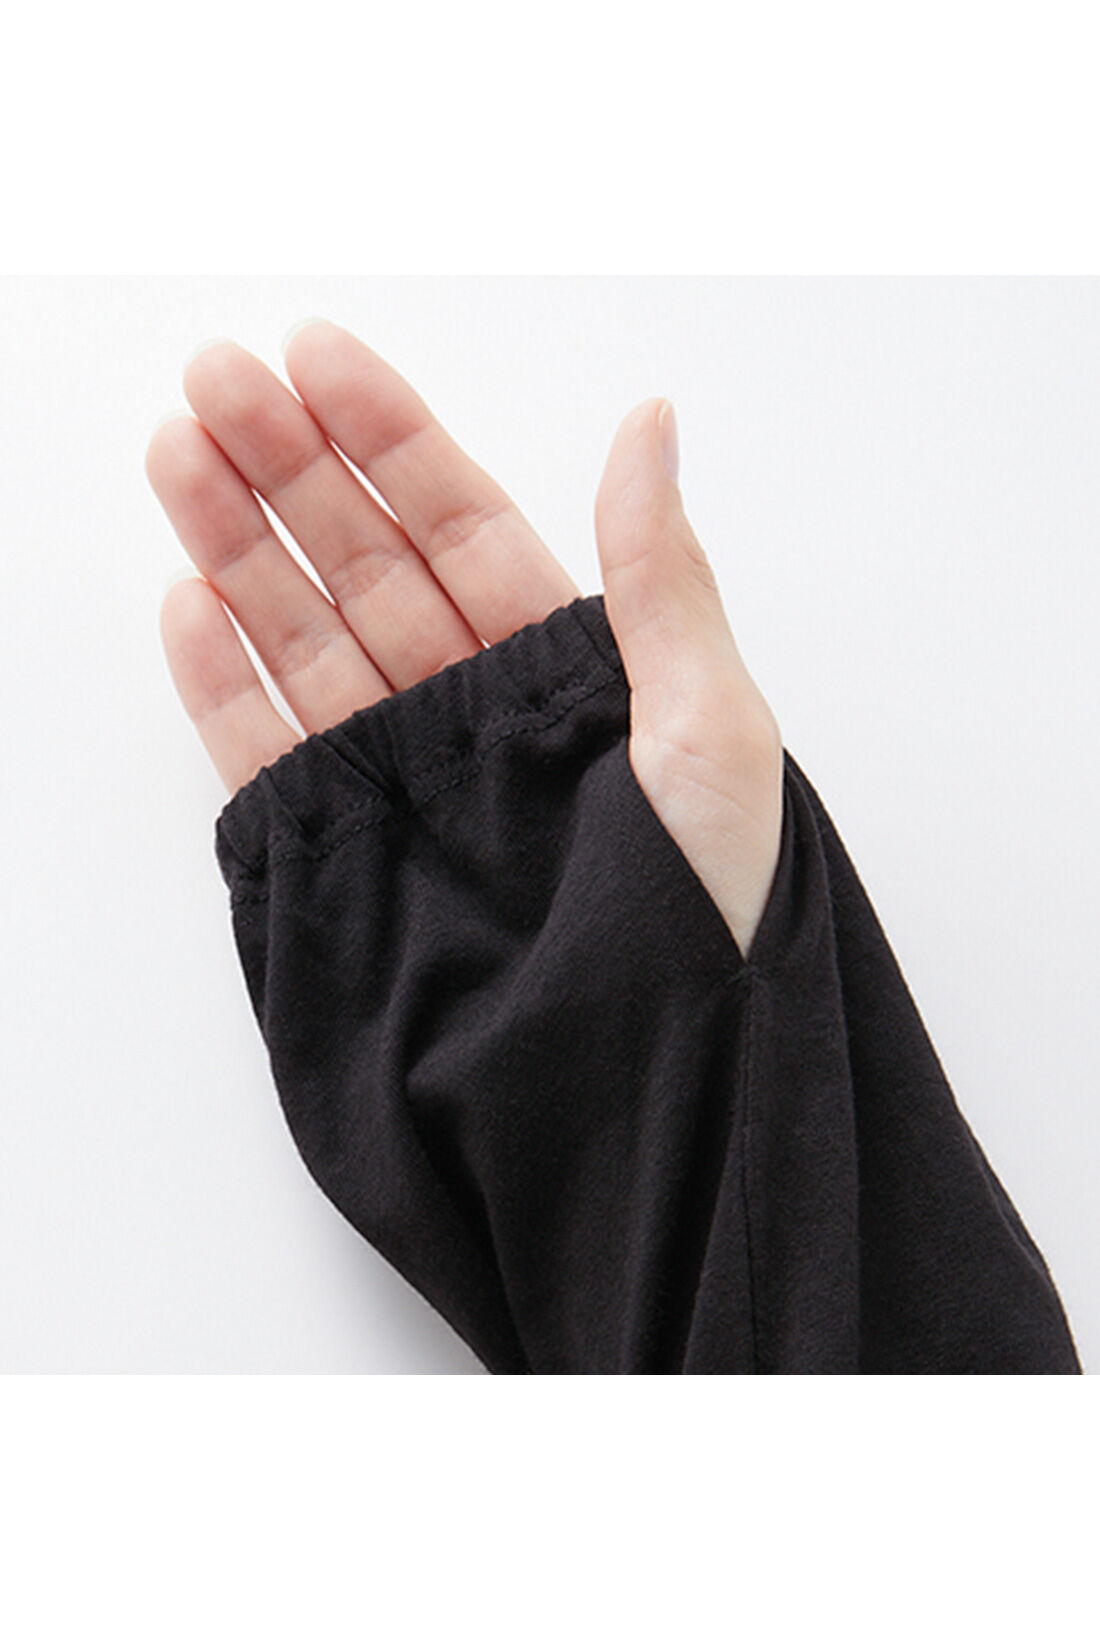 IEDIT|IEDIT[イディット]　360°着映えるフリルUVブルゾン〈ブラック〉|親指ホール付きで手の甲までしっかりカバーできて安心。